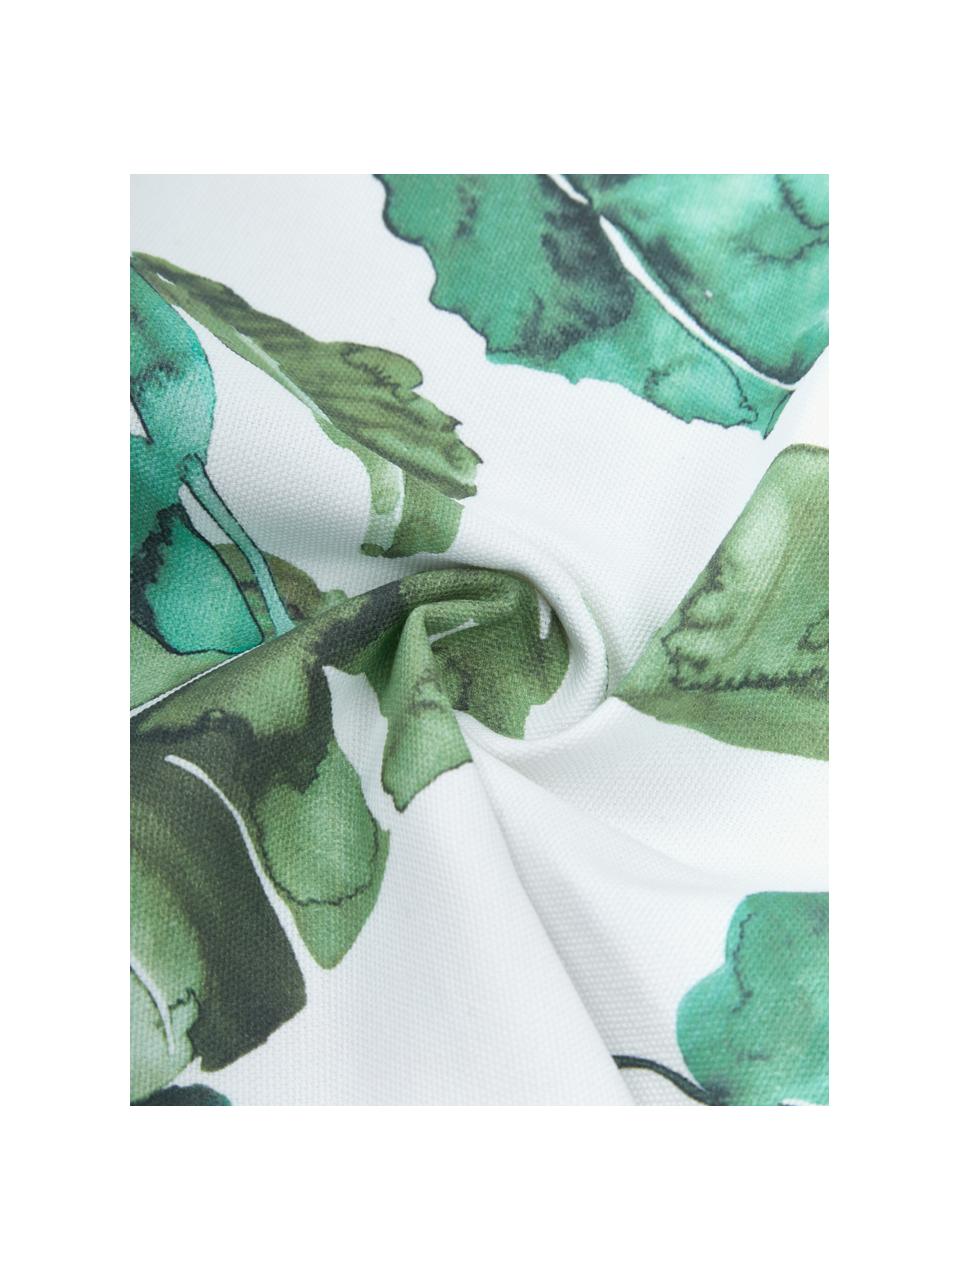 Baumwoll-Kissenhülle Shade mit Blättermotiven, 100% Baumwolle, Grün, Weiß, B 45 x L 45 cm